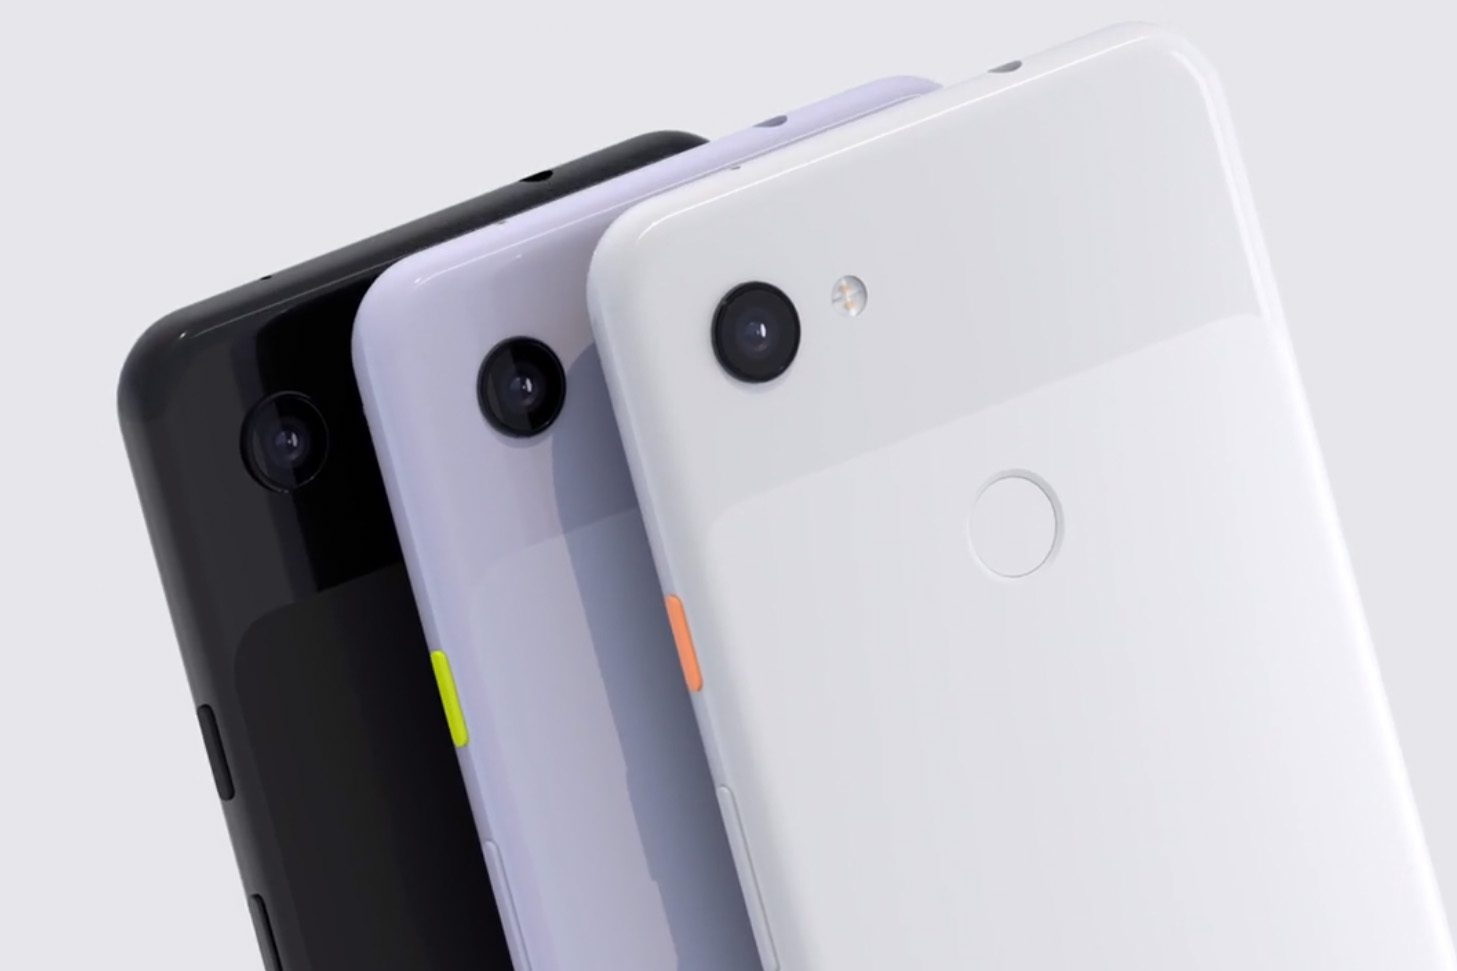 O Pixel 3a é um tipo completamente novo de telefone Android econômico